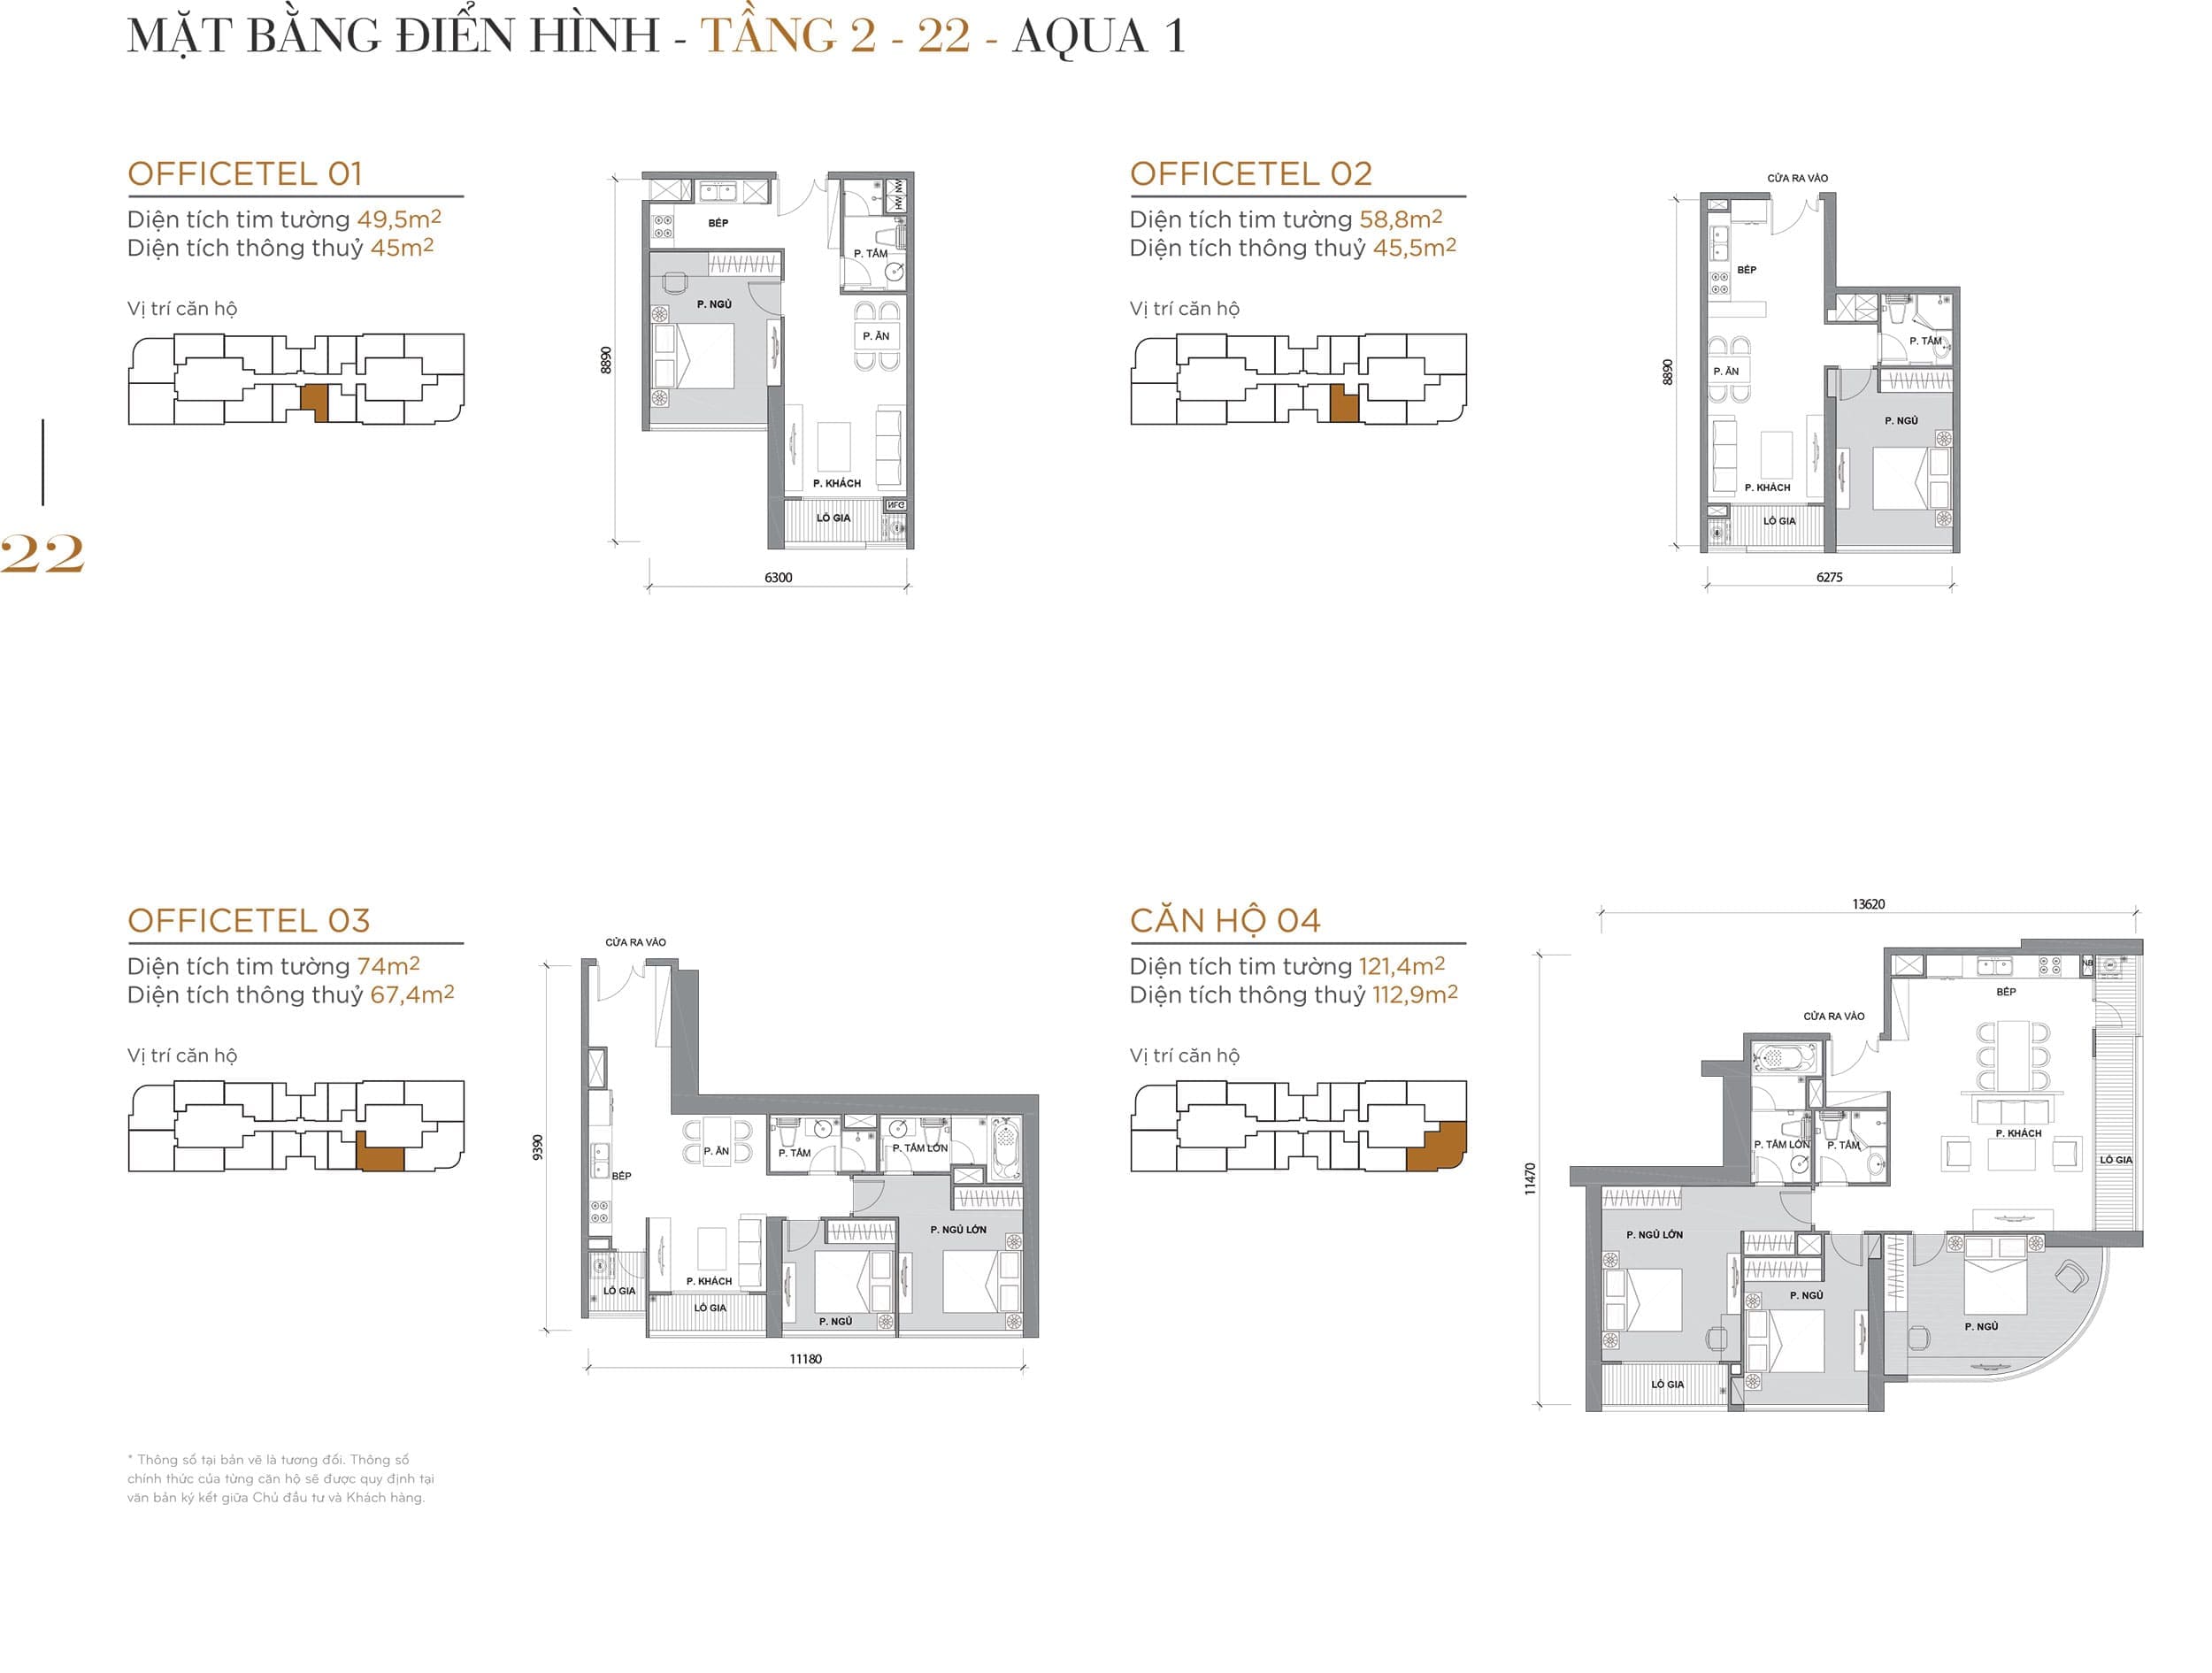 Layout căn hộ điển hình tầng 02 đến tầng 22 tòa Aqua 1 loại Officetel 01, Officetel 02, Officetel 03, Căn hộ 04.